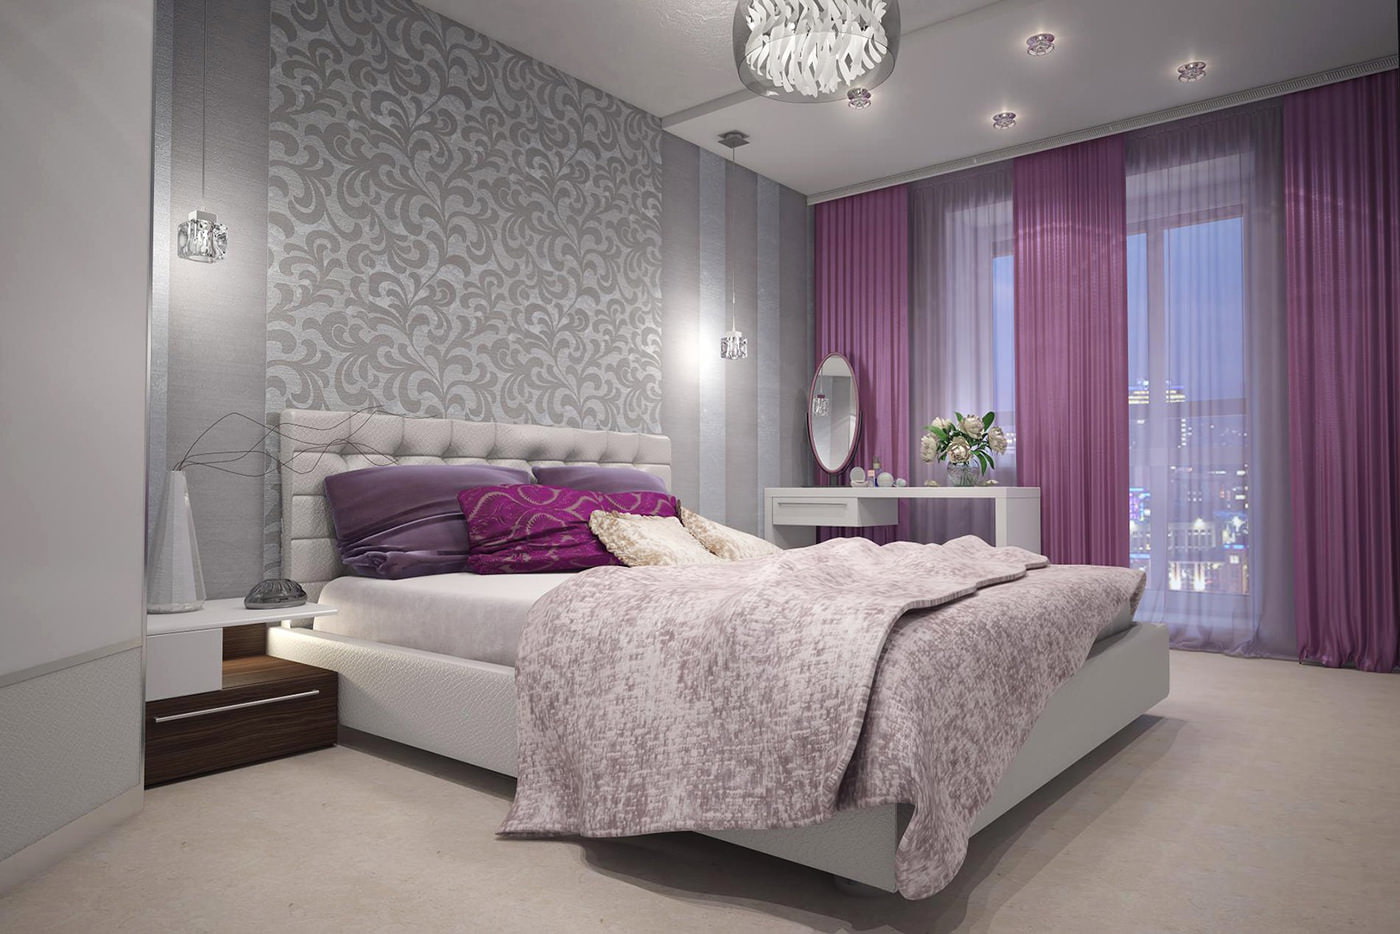 rideaux violets dans la conception de la chambre avec du papier peint gris